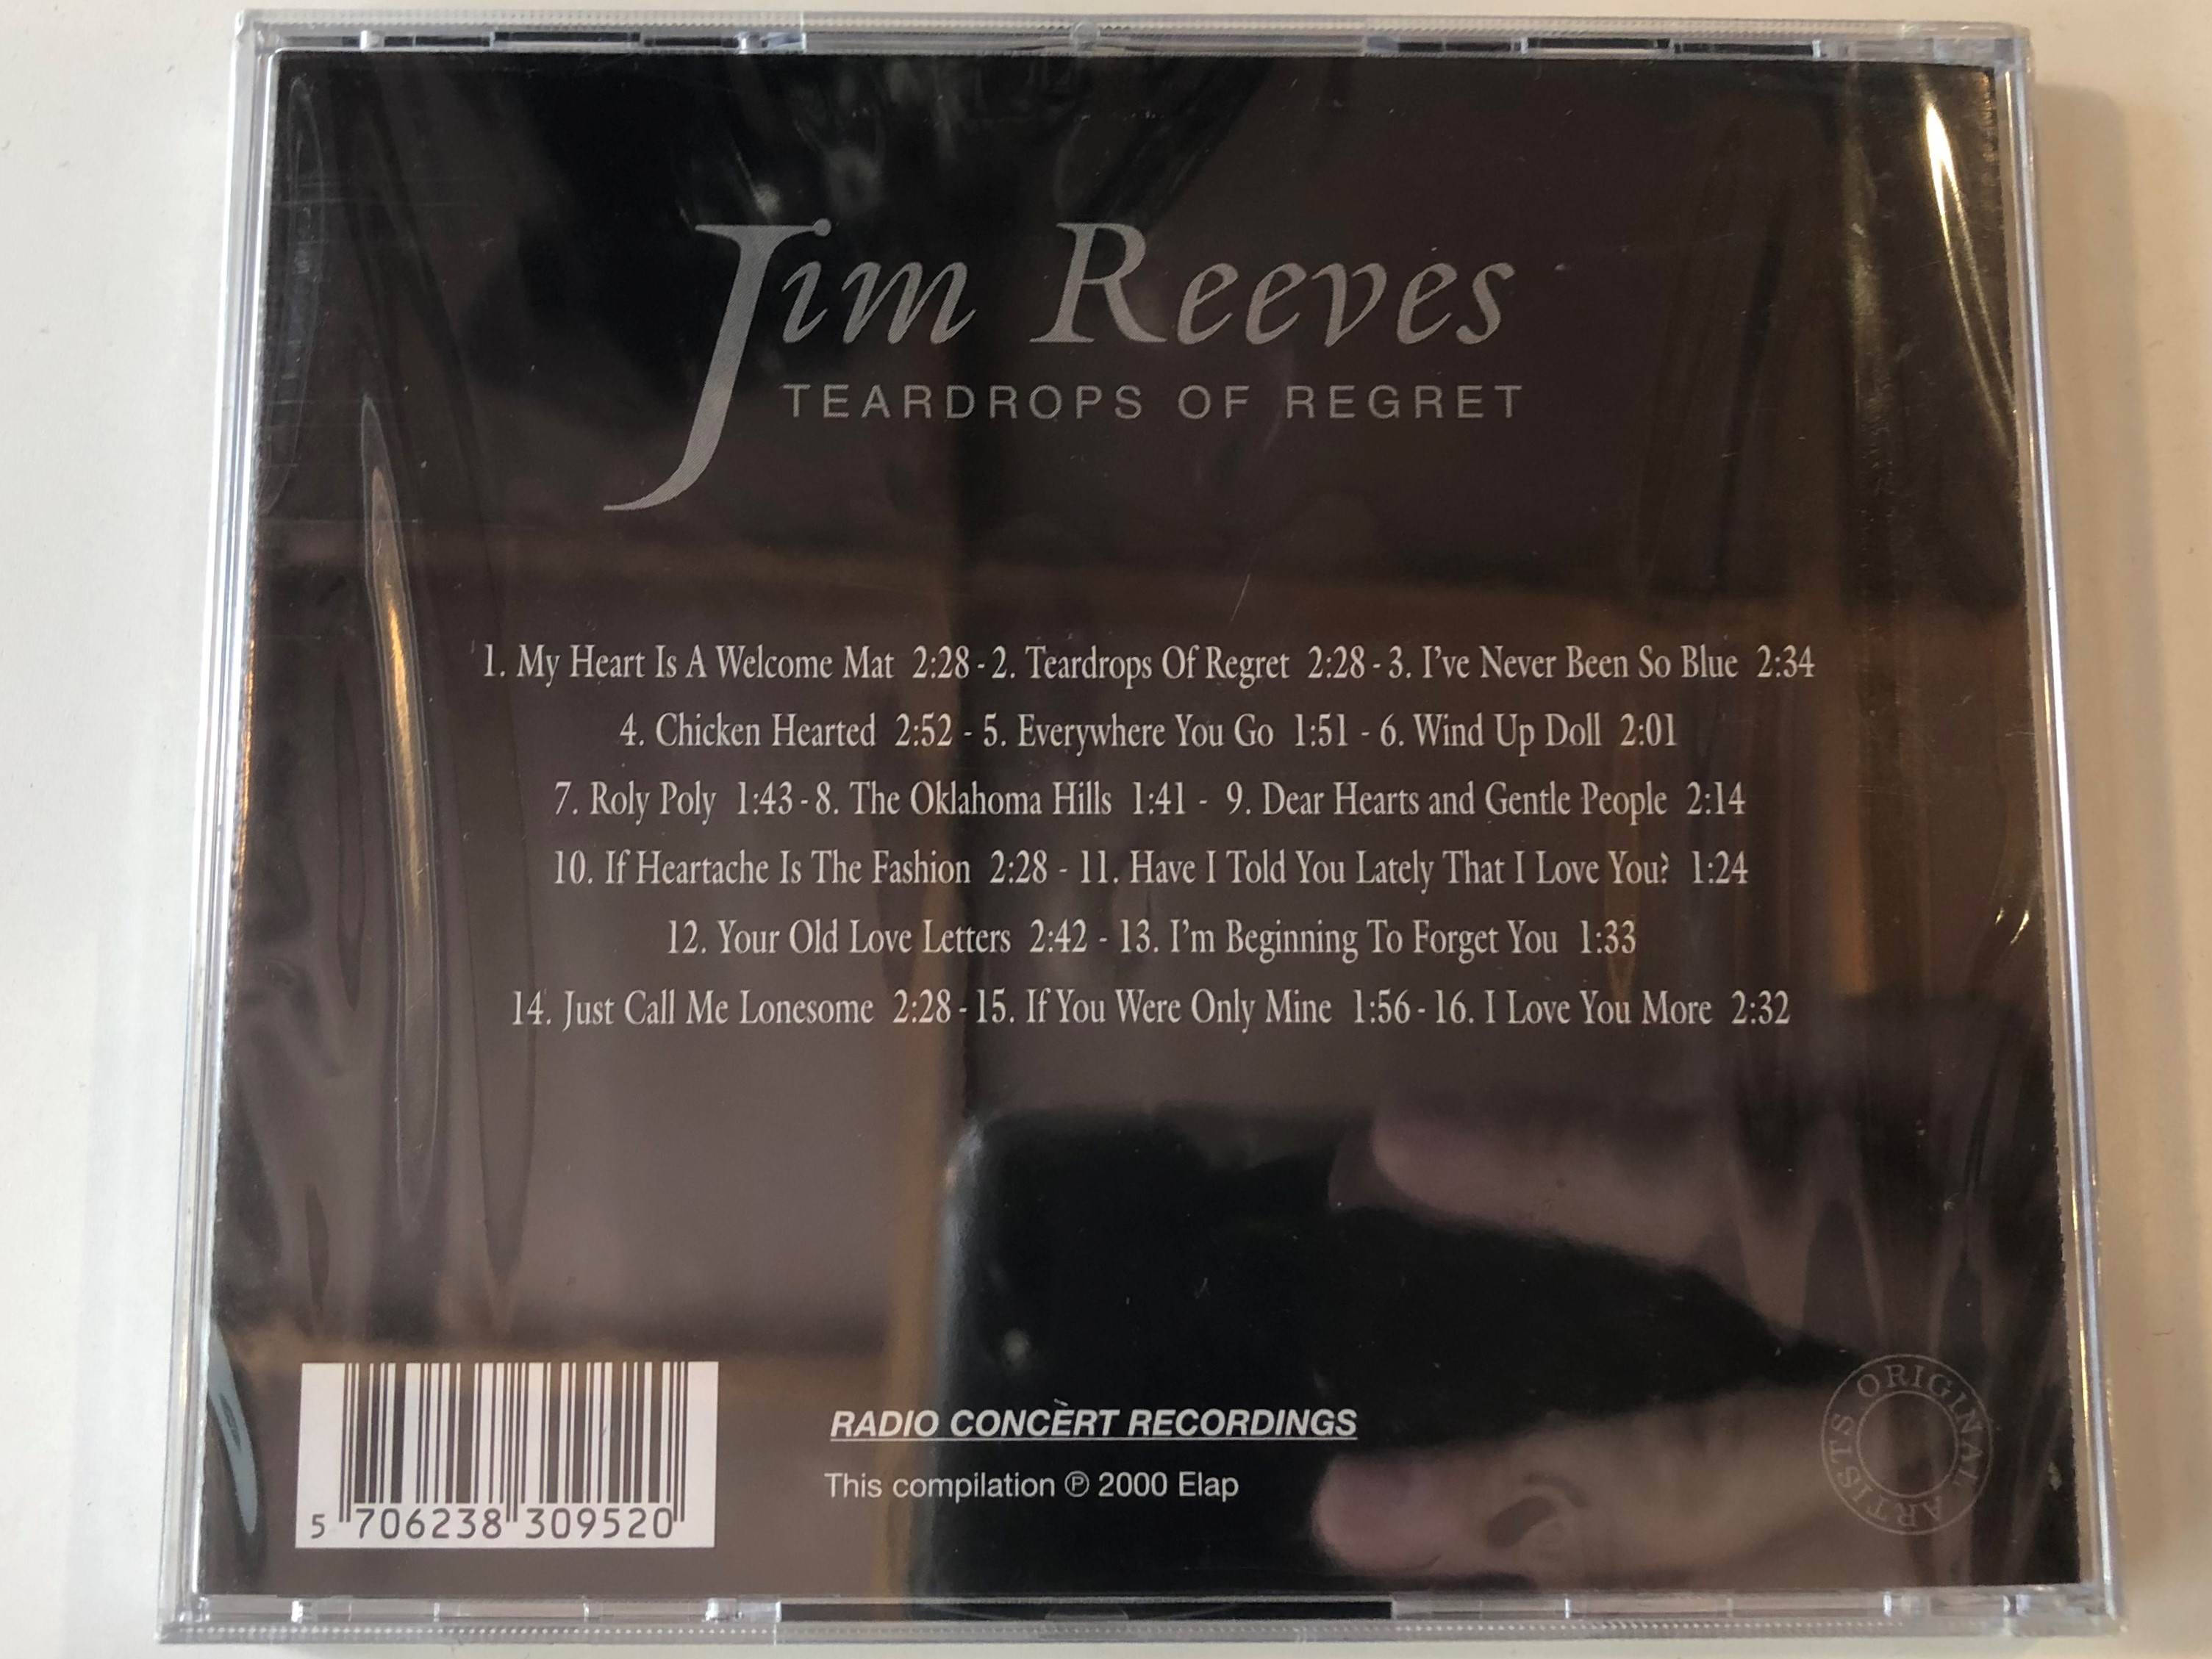 jim-reeves-teardrops-of-regret-elap-audio-cd-2000-5706238309520-2-.jpg